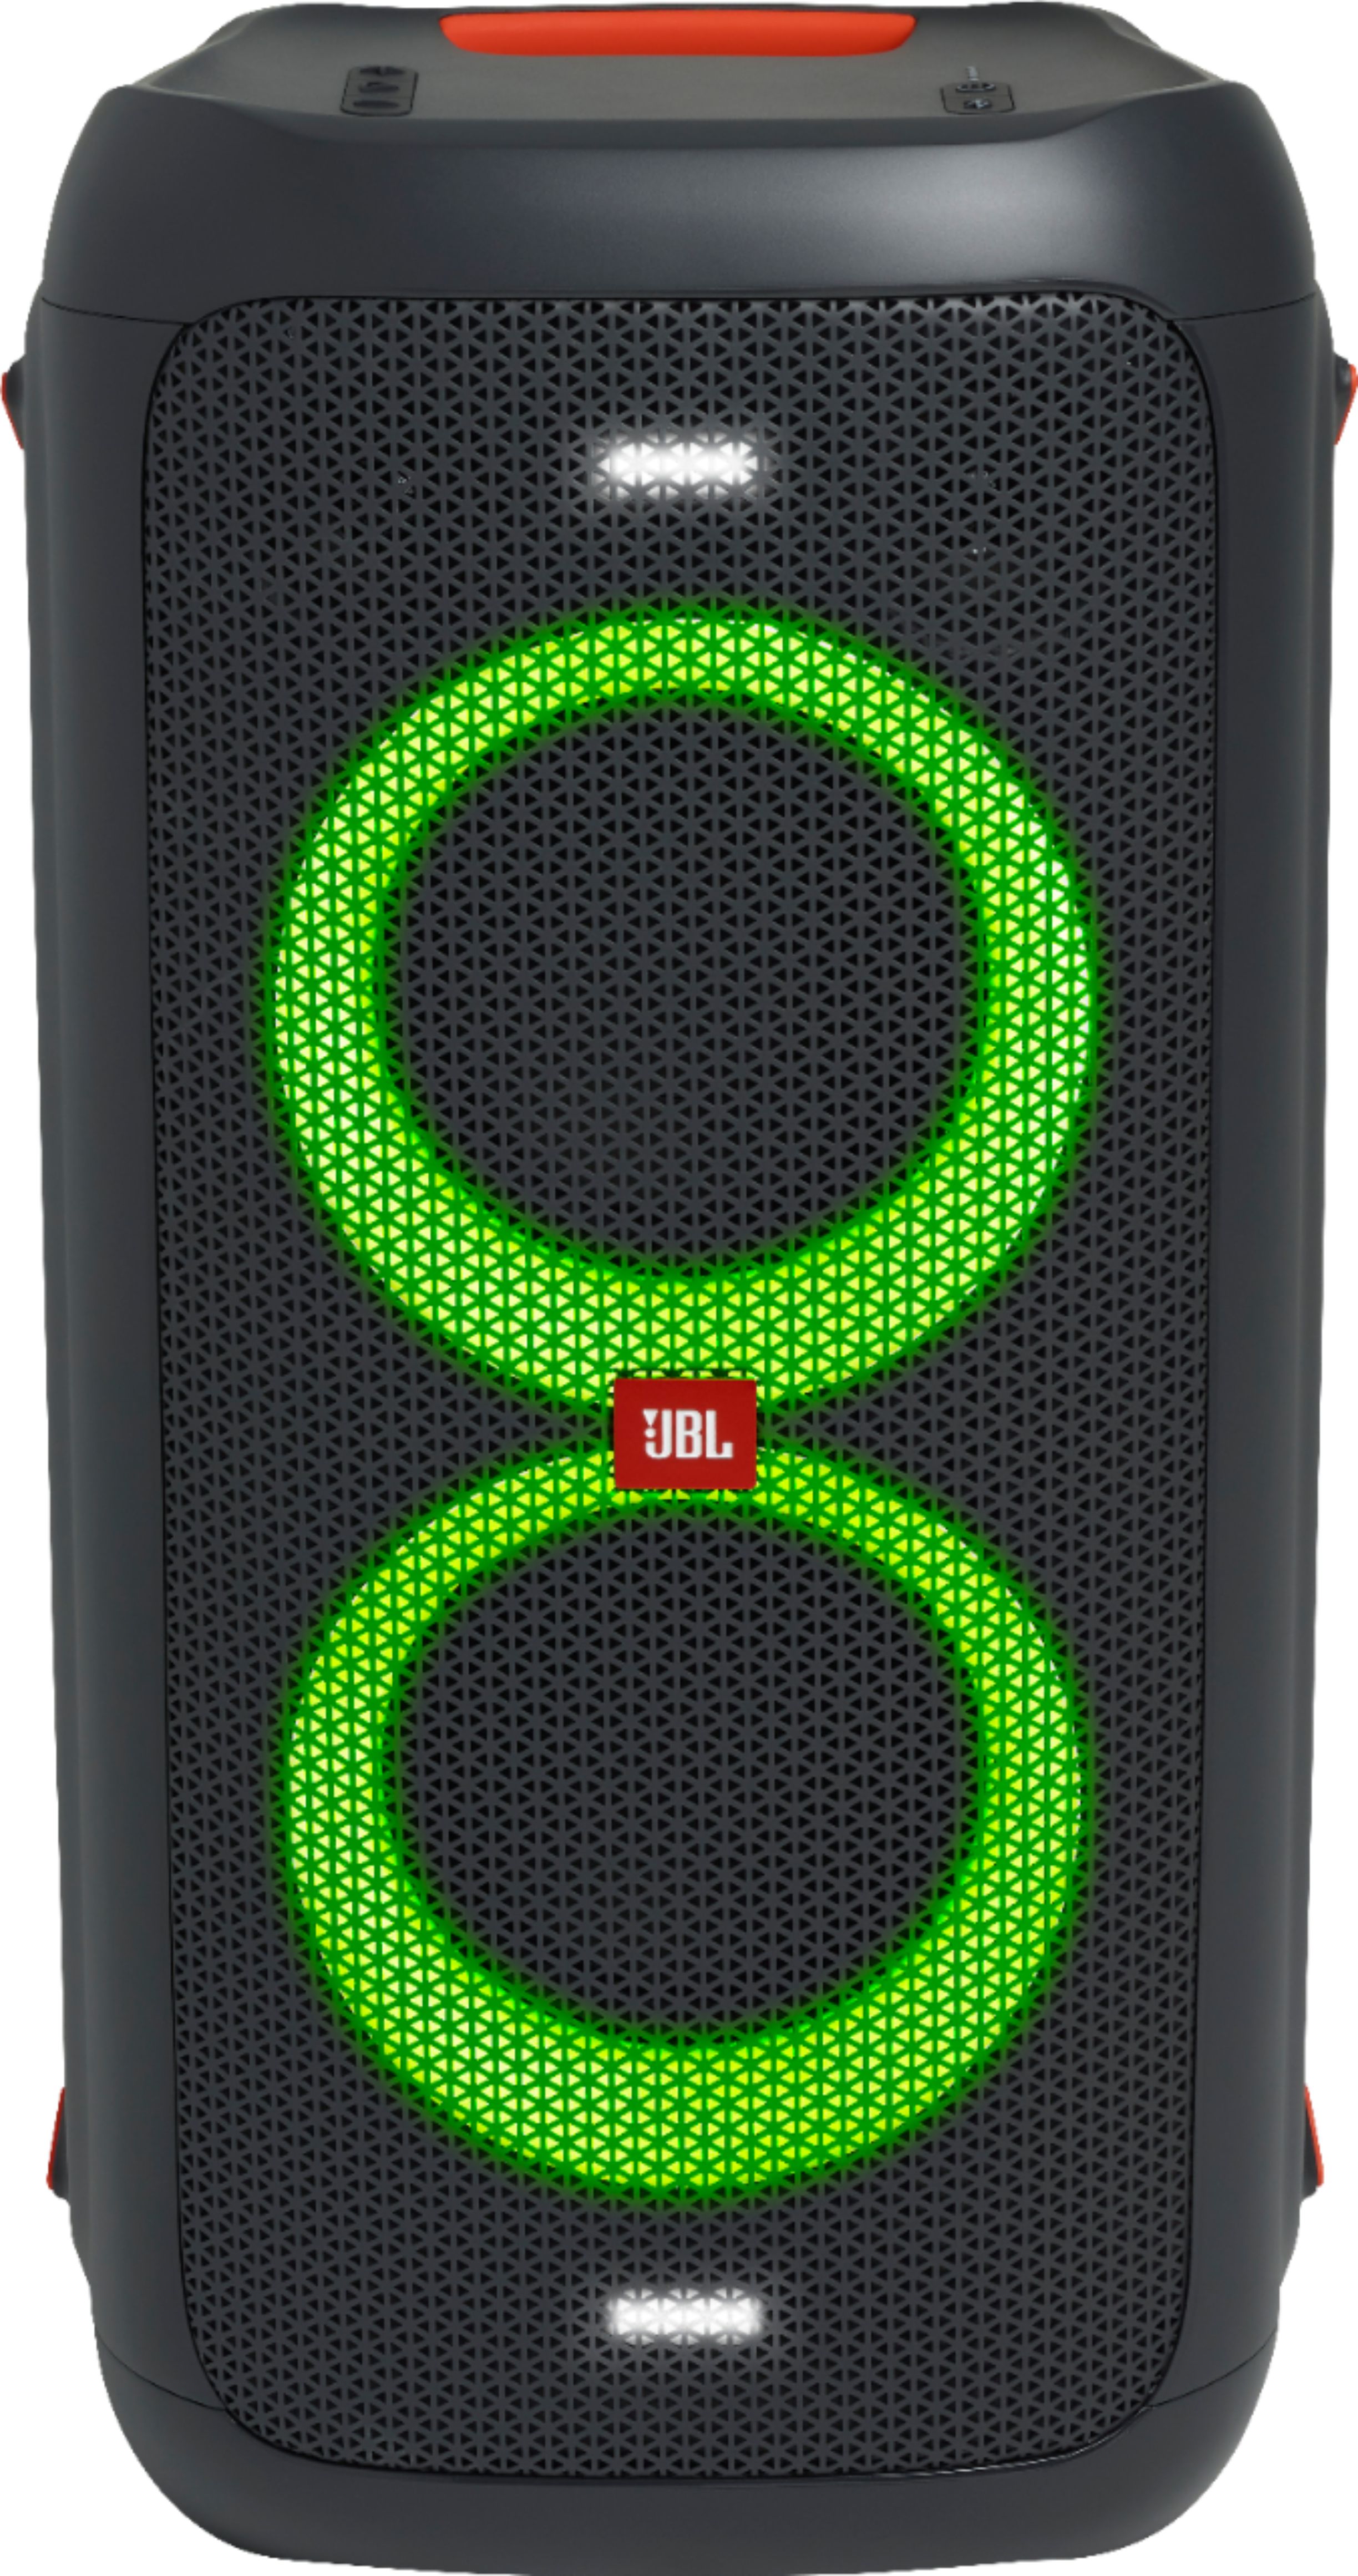 JBL 100 Speaker Black JBLPARTYBOX100 - Best Buy